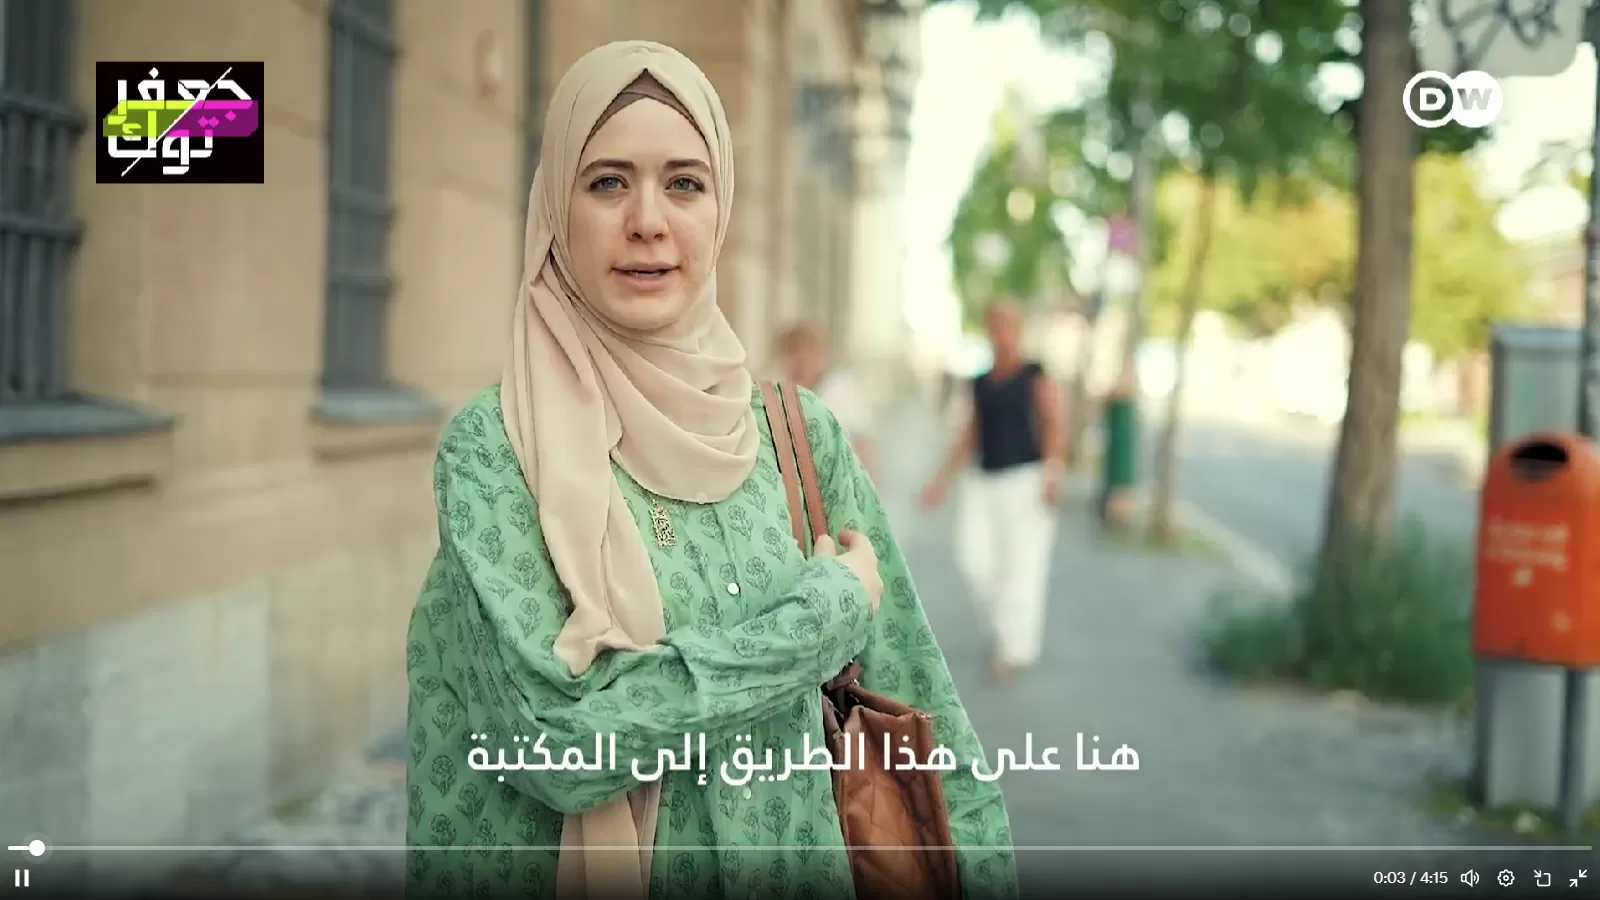 الشابة السورية وئام التي تعرضت للعنصرية في ألمانيا